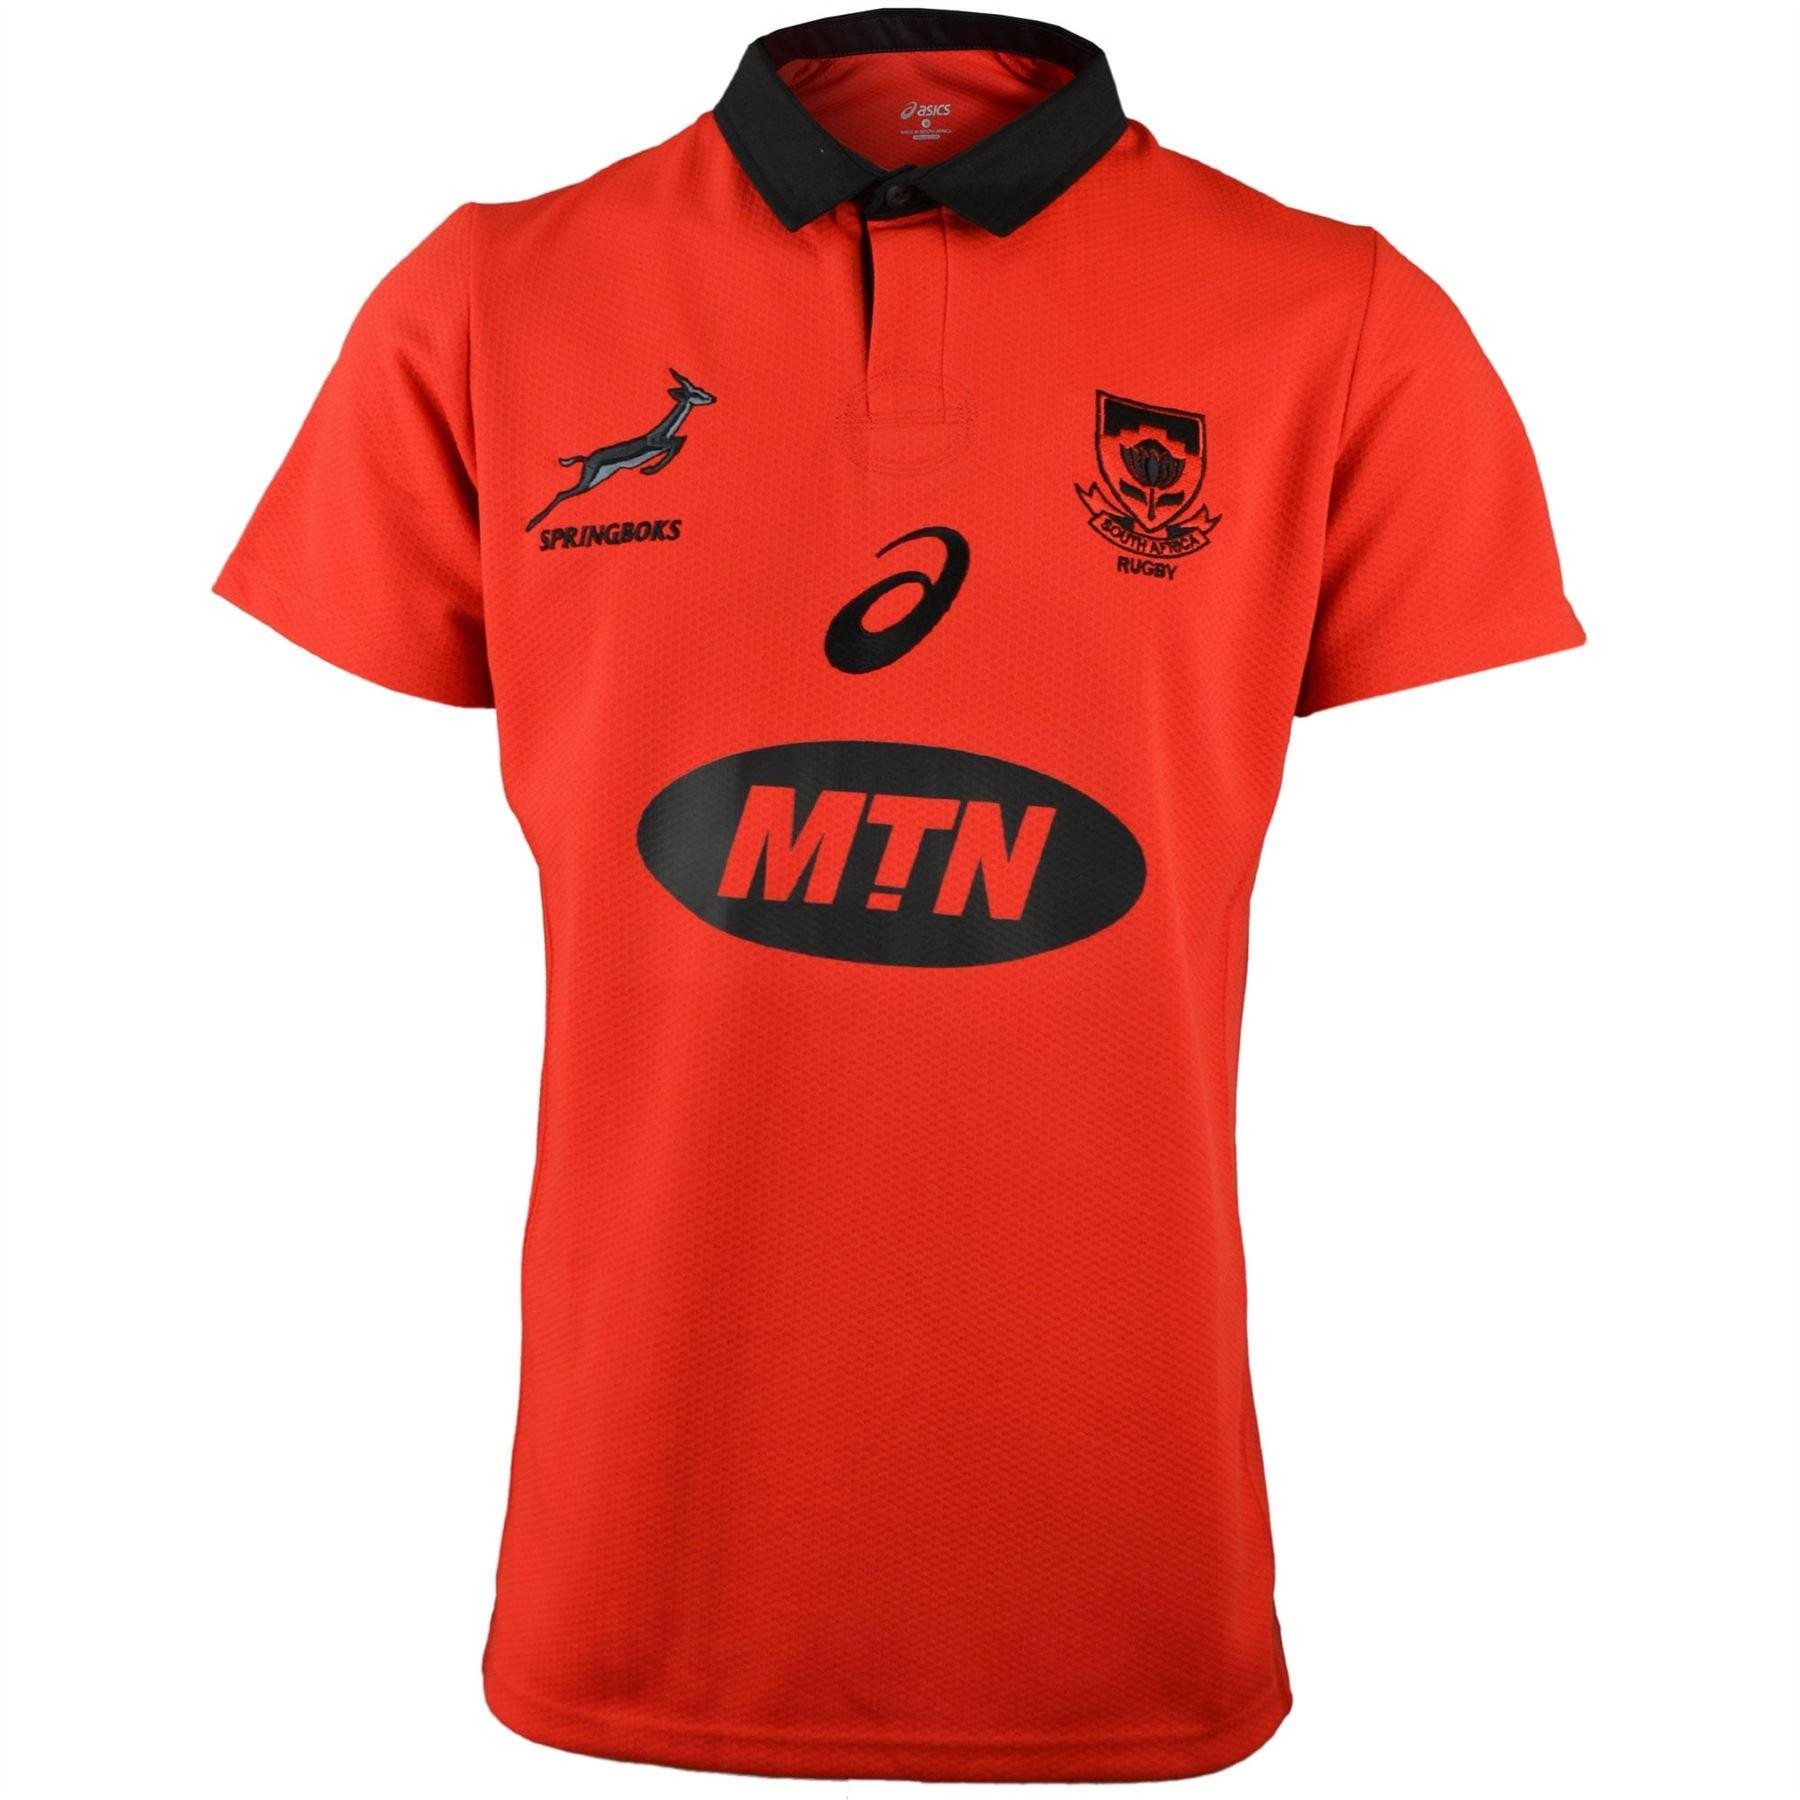 Asics Springboks Fan Shirt Fiery Red